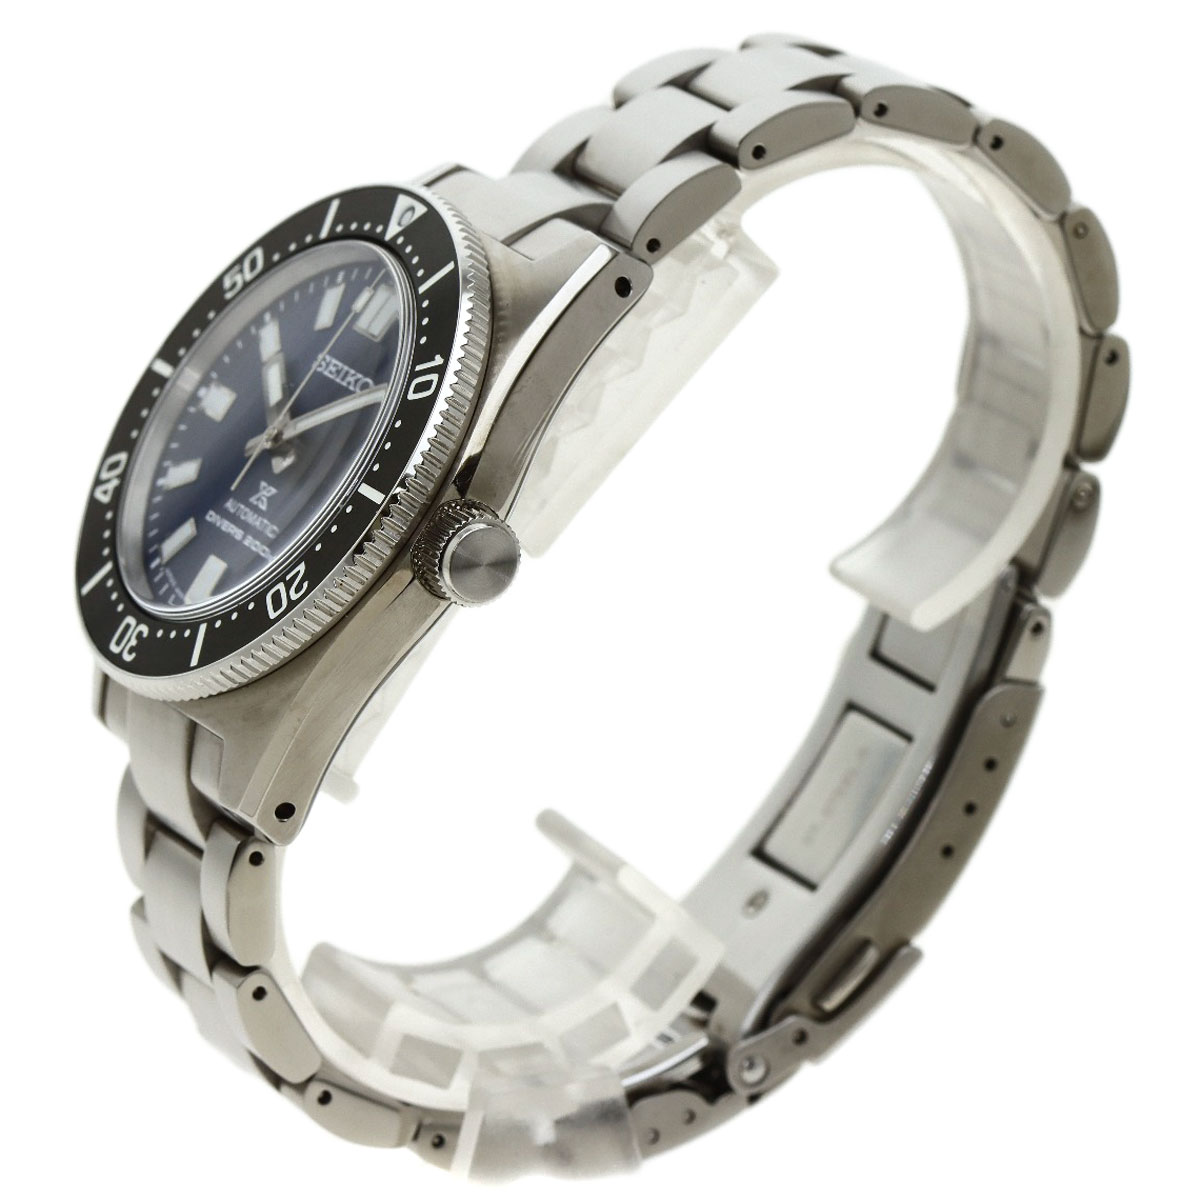 楽天市場】セイコー SBDC165 6R35-01V0 プロスペックス 腕時計